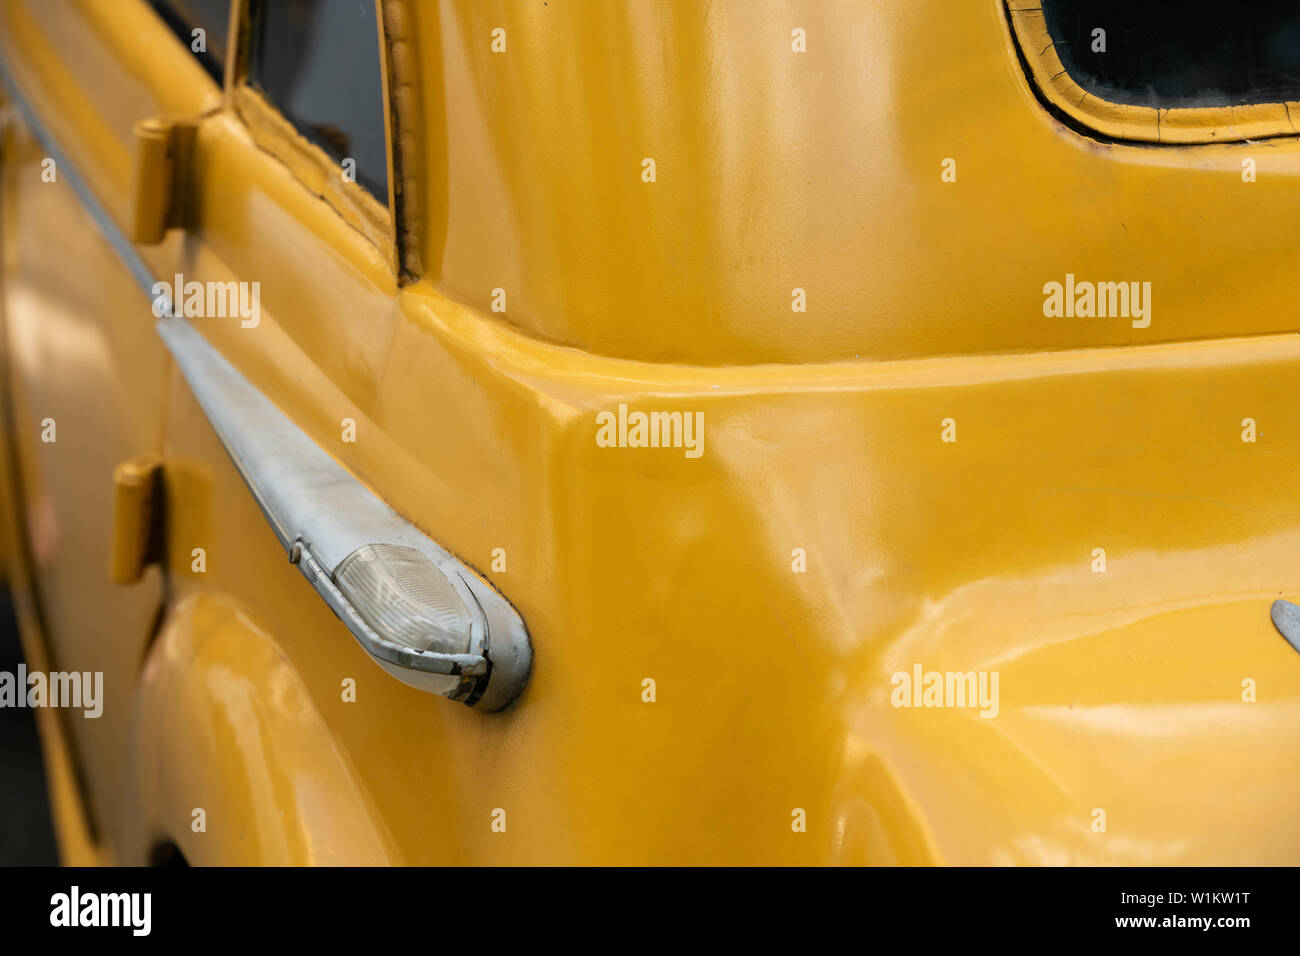 Descripción: Antiguo retro coche amarillo de cerca Foto de stock